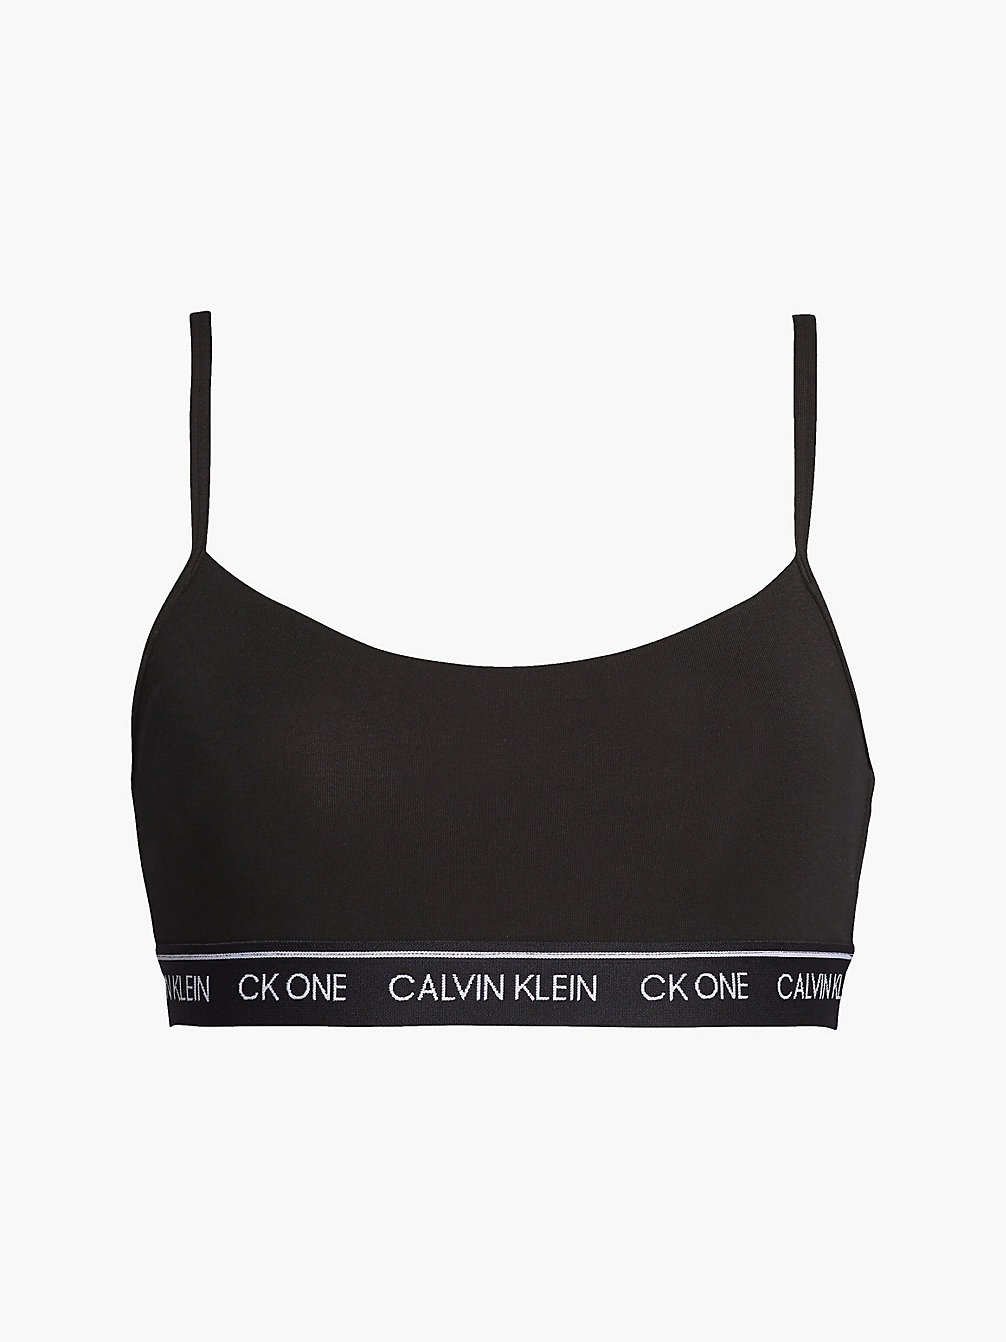 BLACK > String Bralette - CK One > undefined dames - Calvin Klein